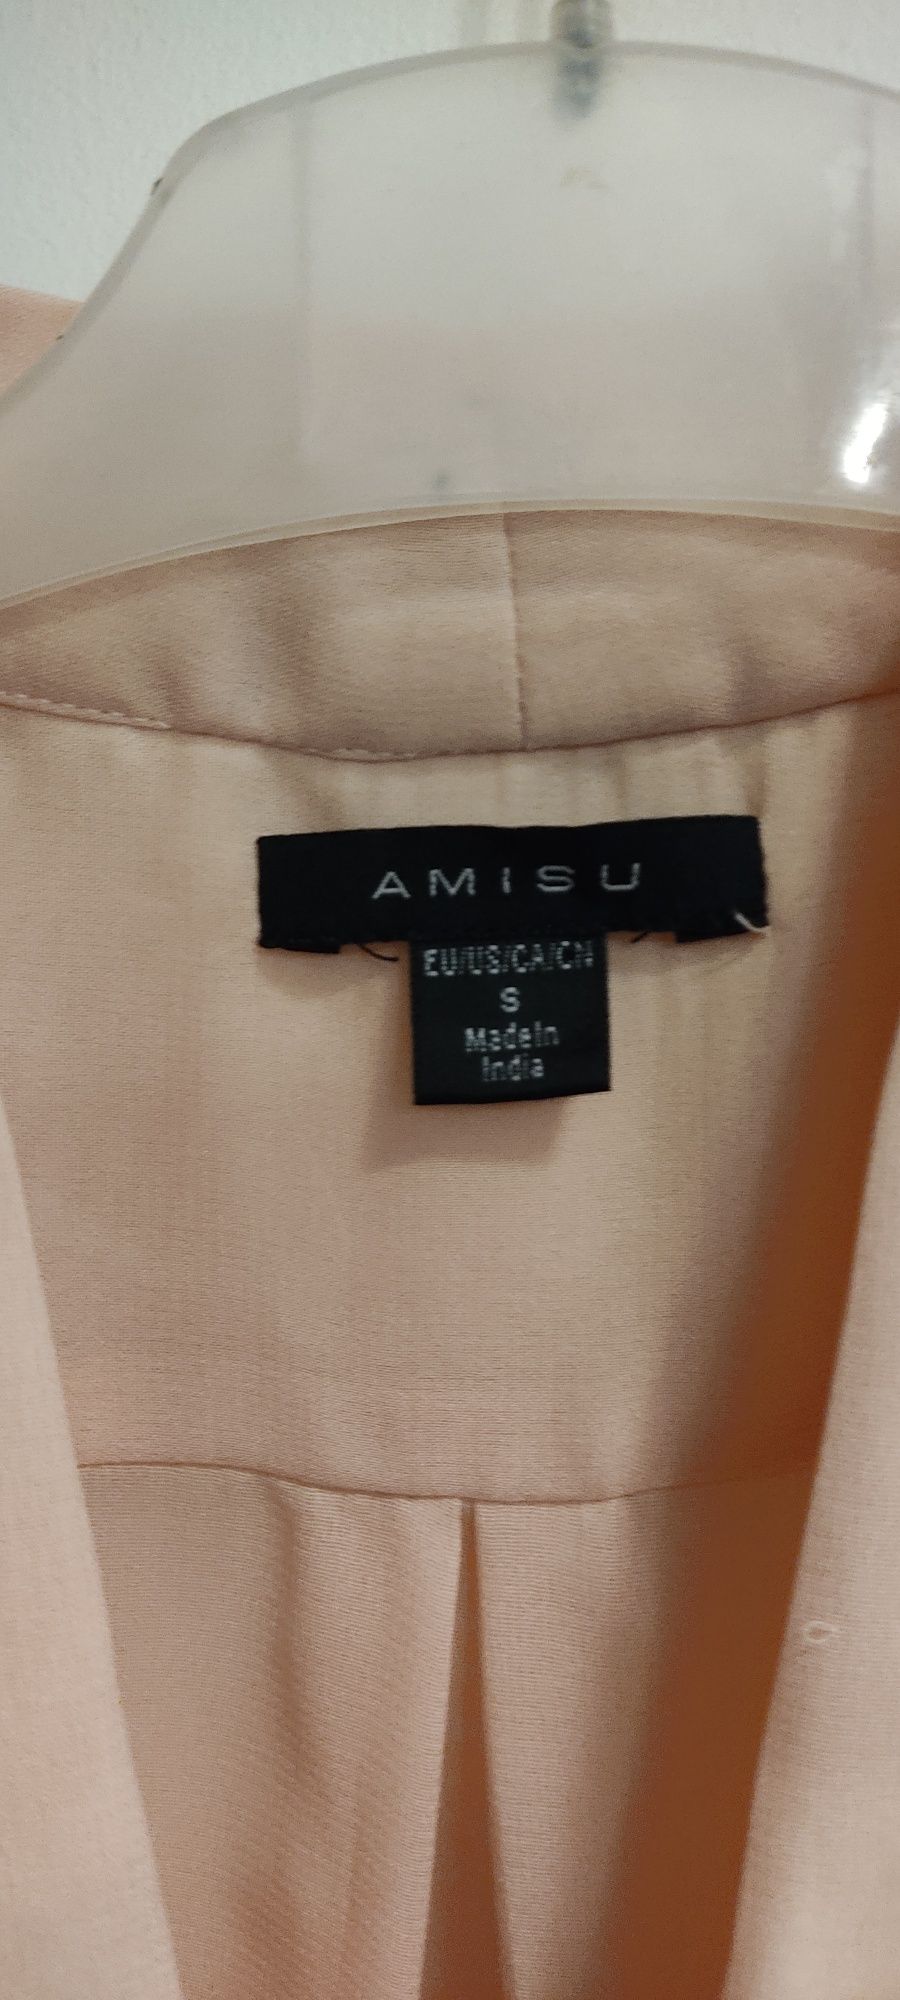 Zwiewna bluzka, rozmiar S, Amisu - stan idealny